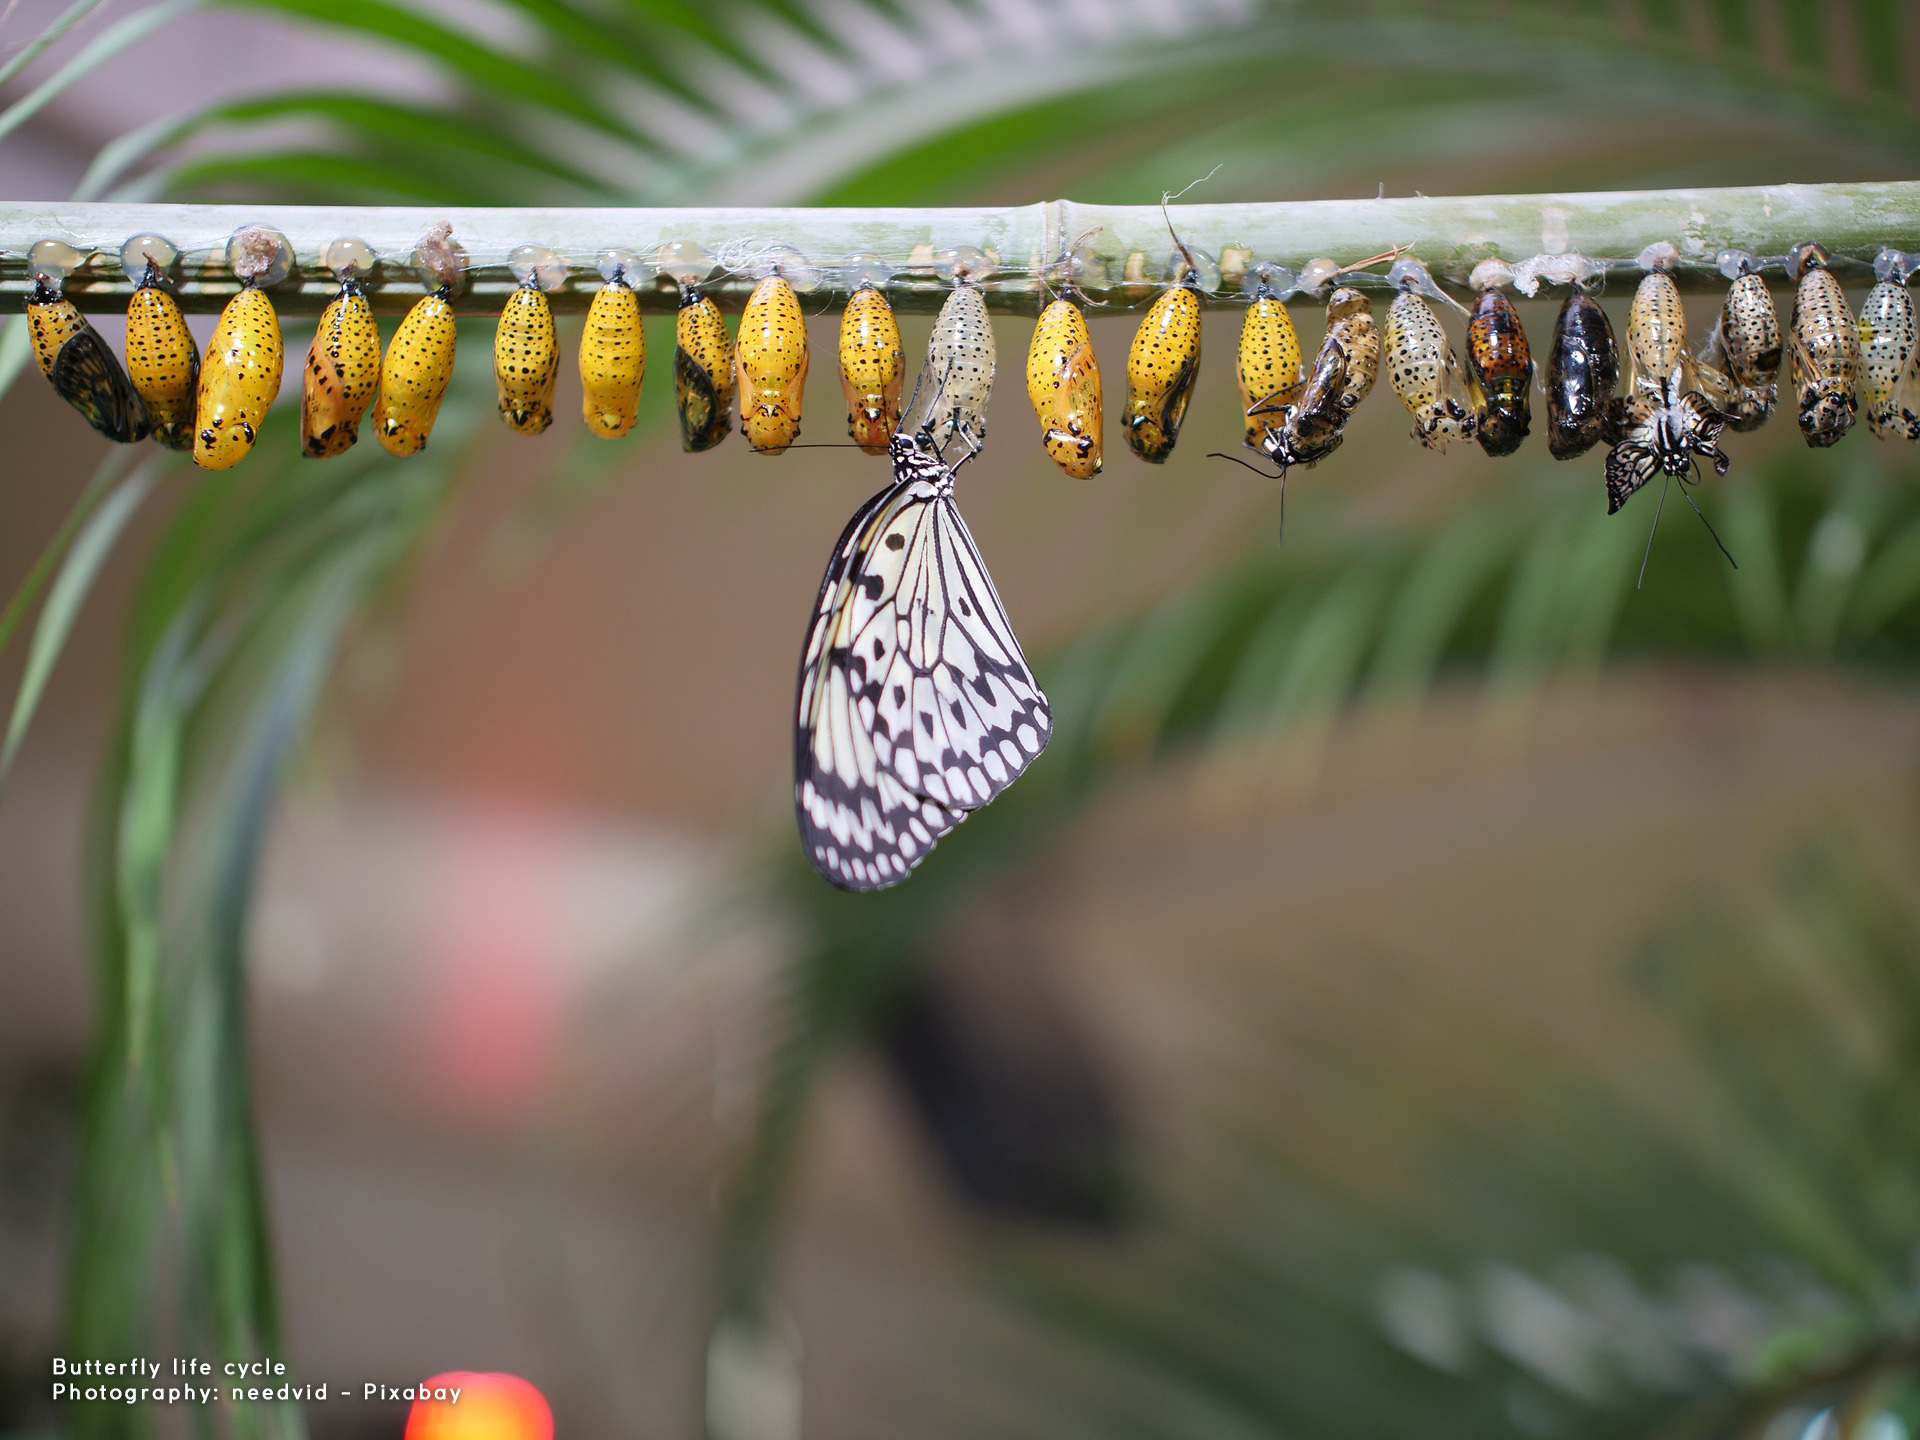 Butterflies, metamorphosis and resilience